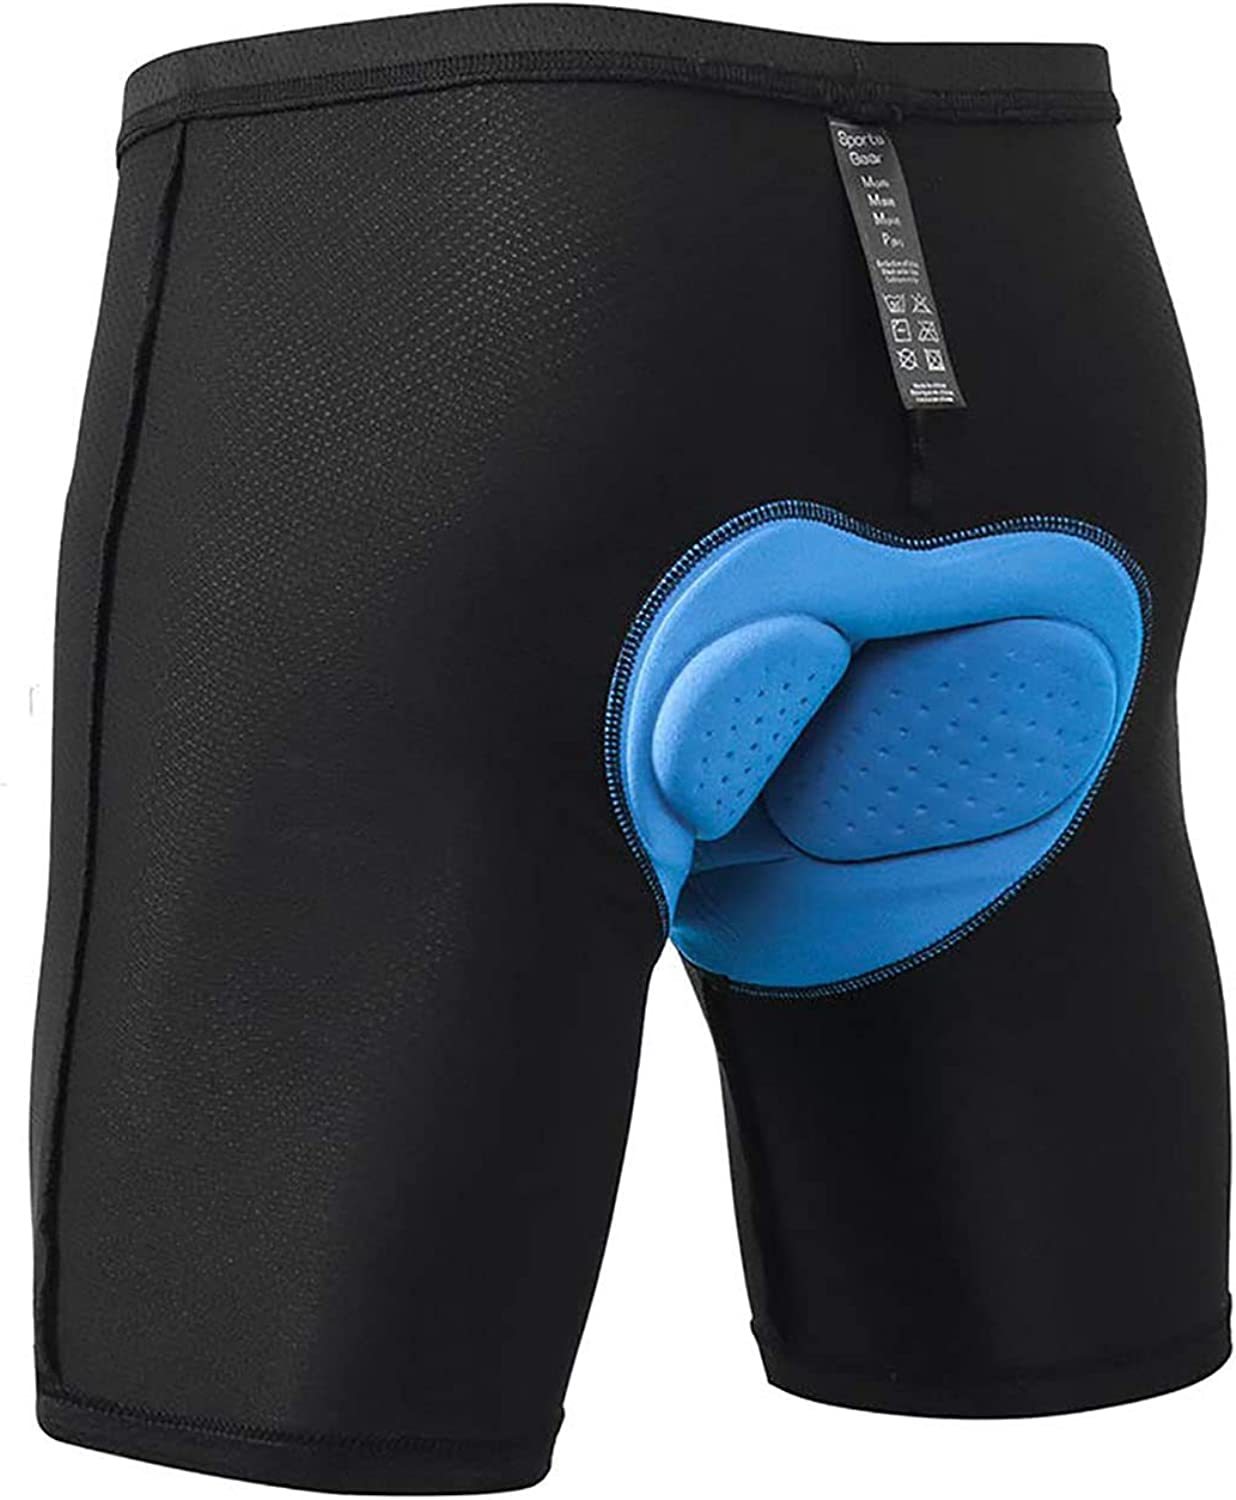 Women's Gel Padded Cycling Underwear Bike Sports Gel Underpants Quick-drying